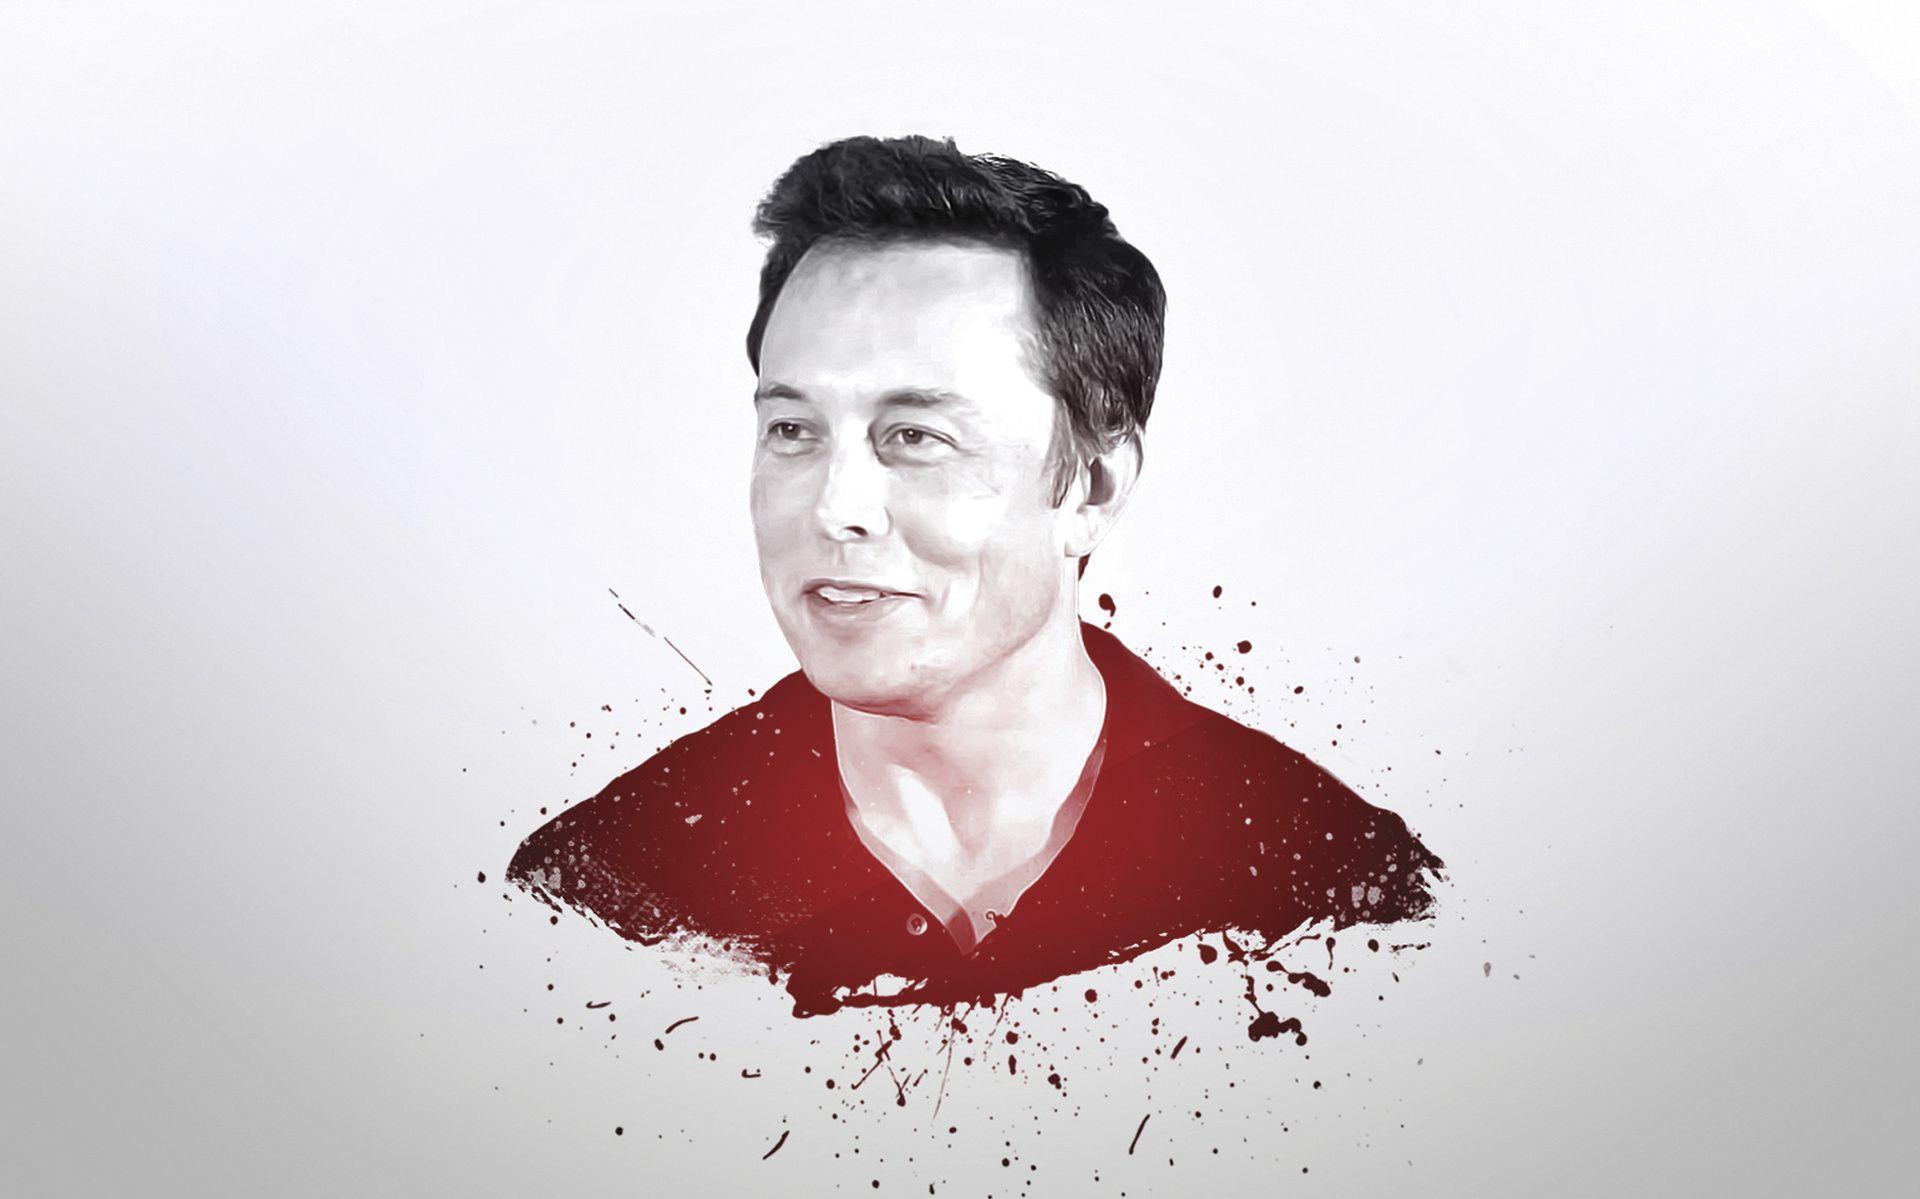 Elon Musk Wallpaper For Desktop Pictures